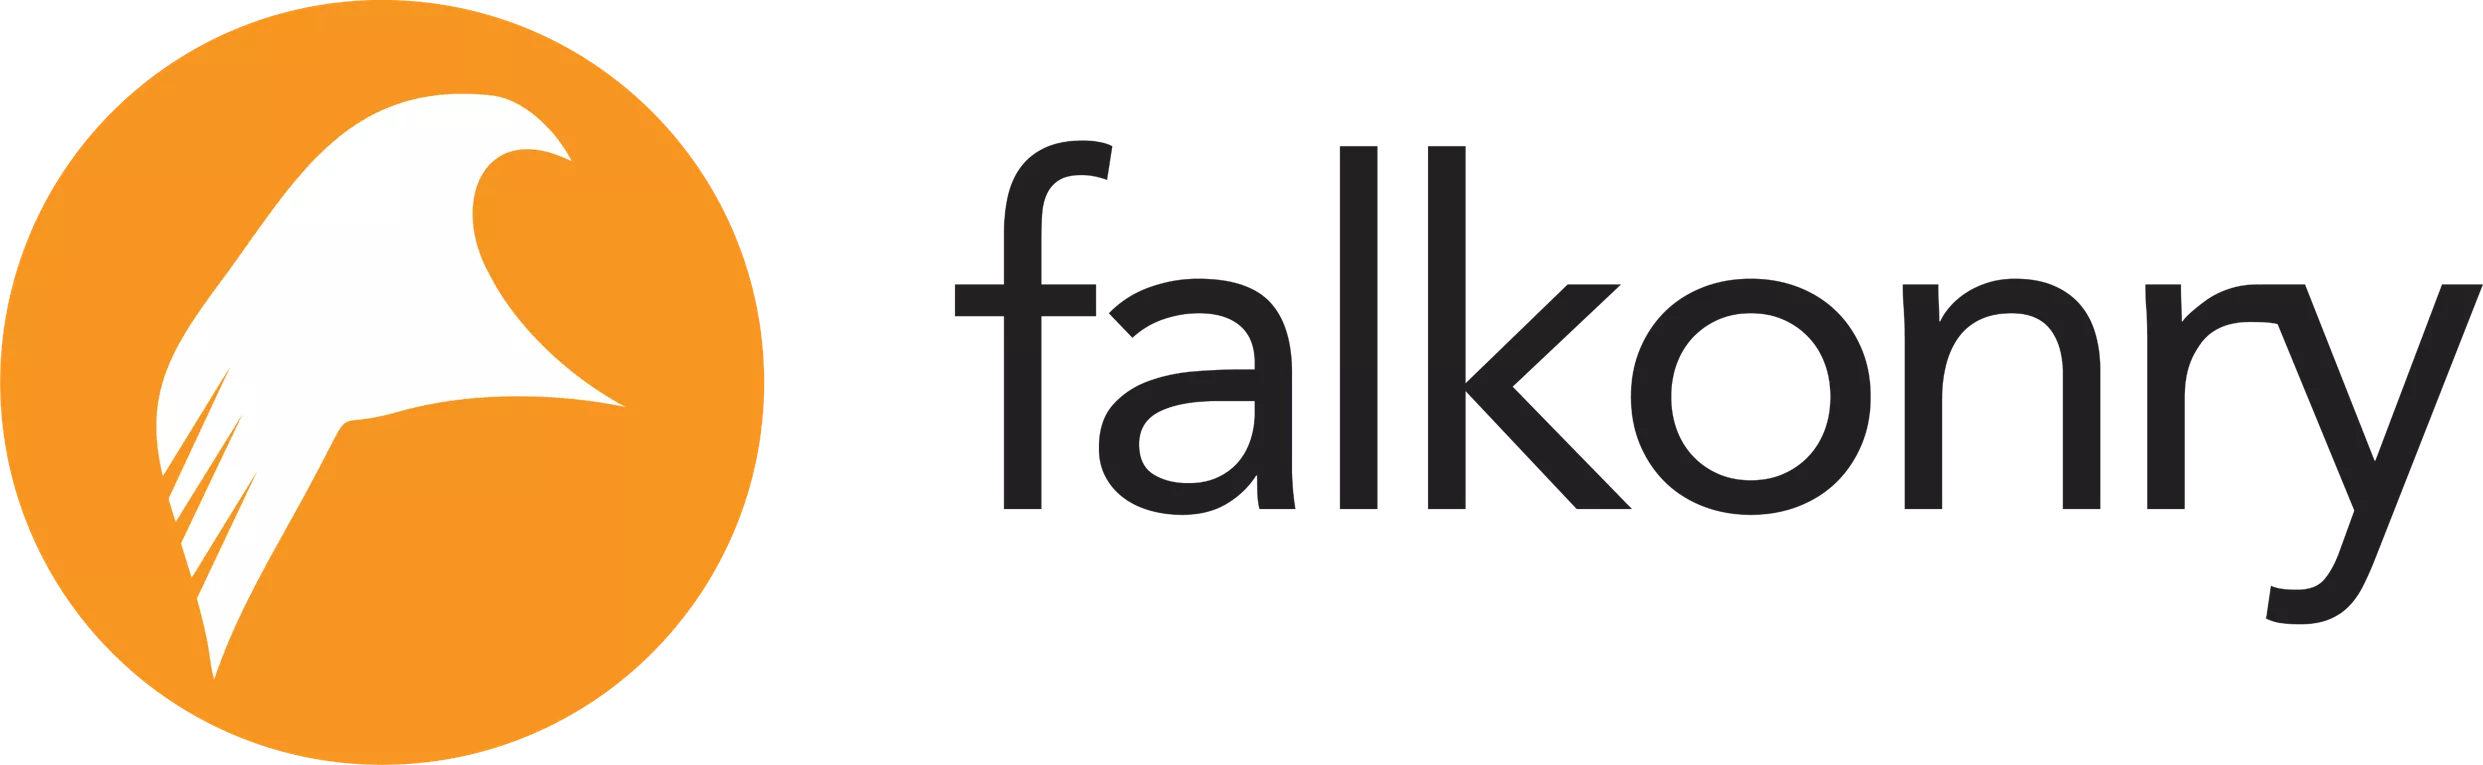 Falkrony logo